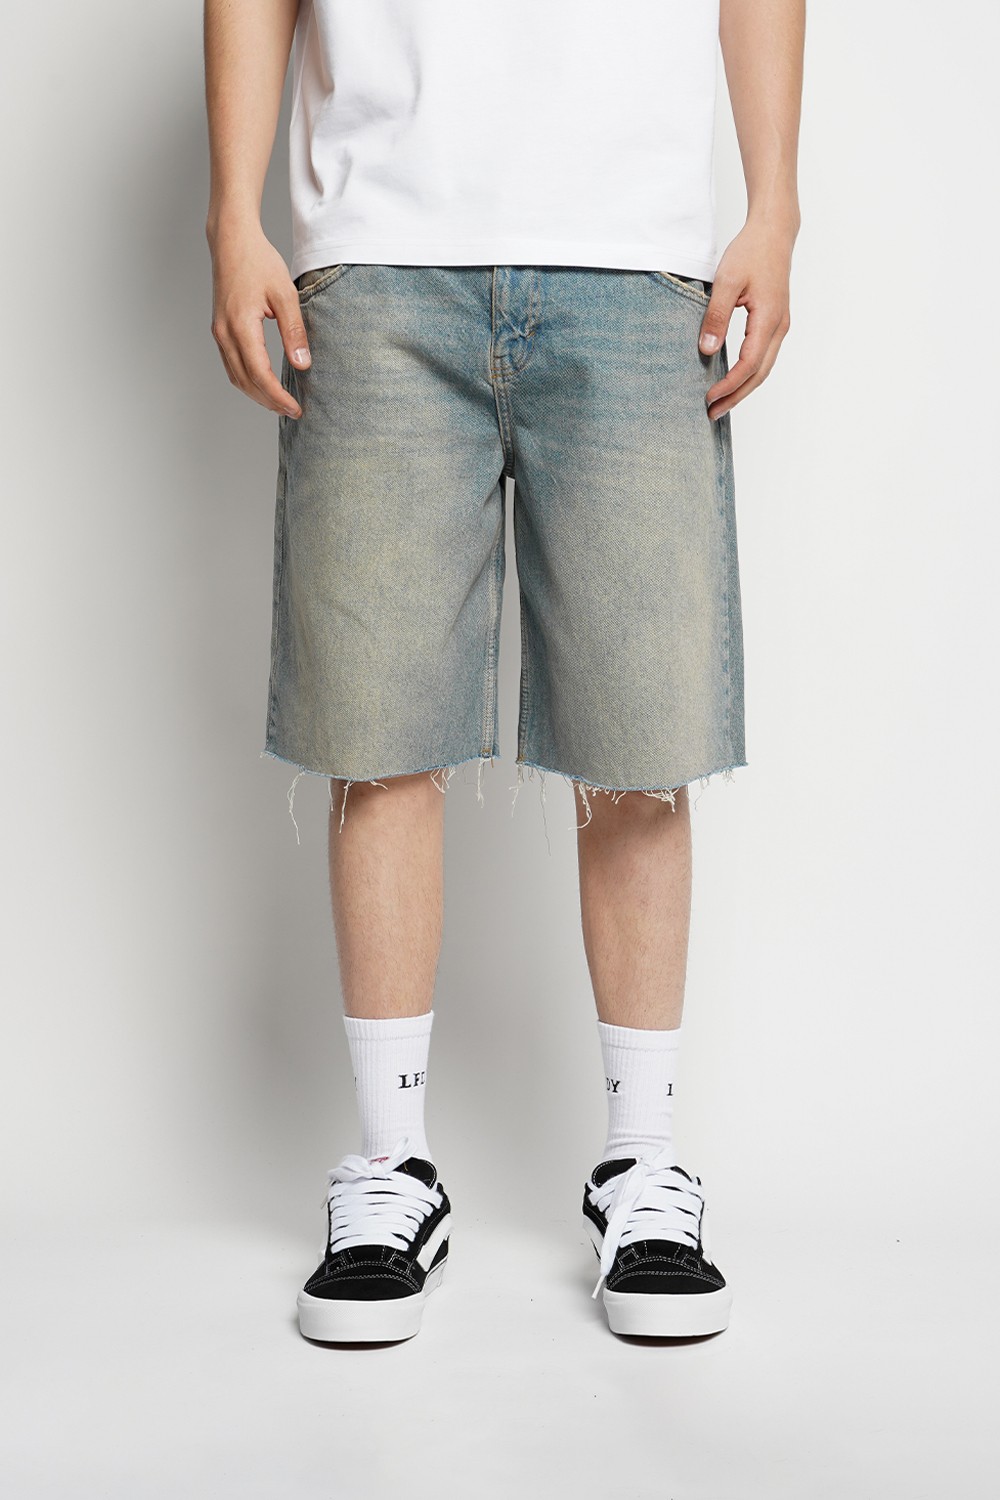 Grunge Washed Boyfriend Shorts (UOS-12)